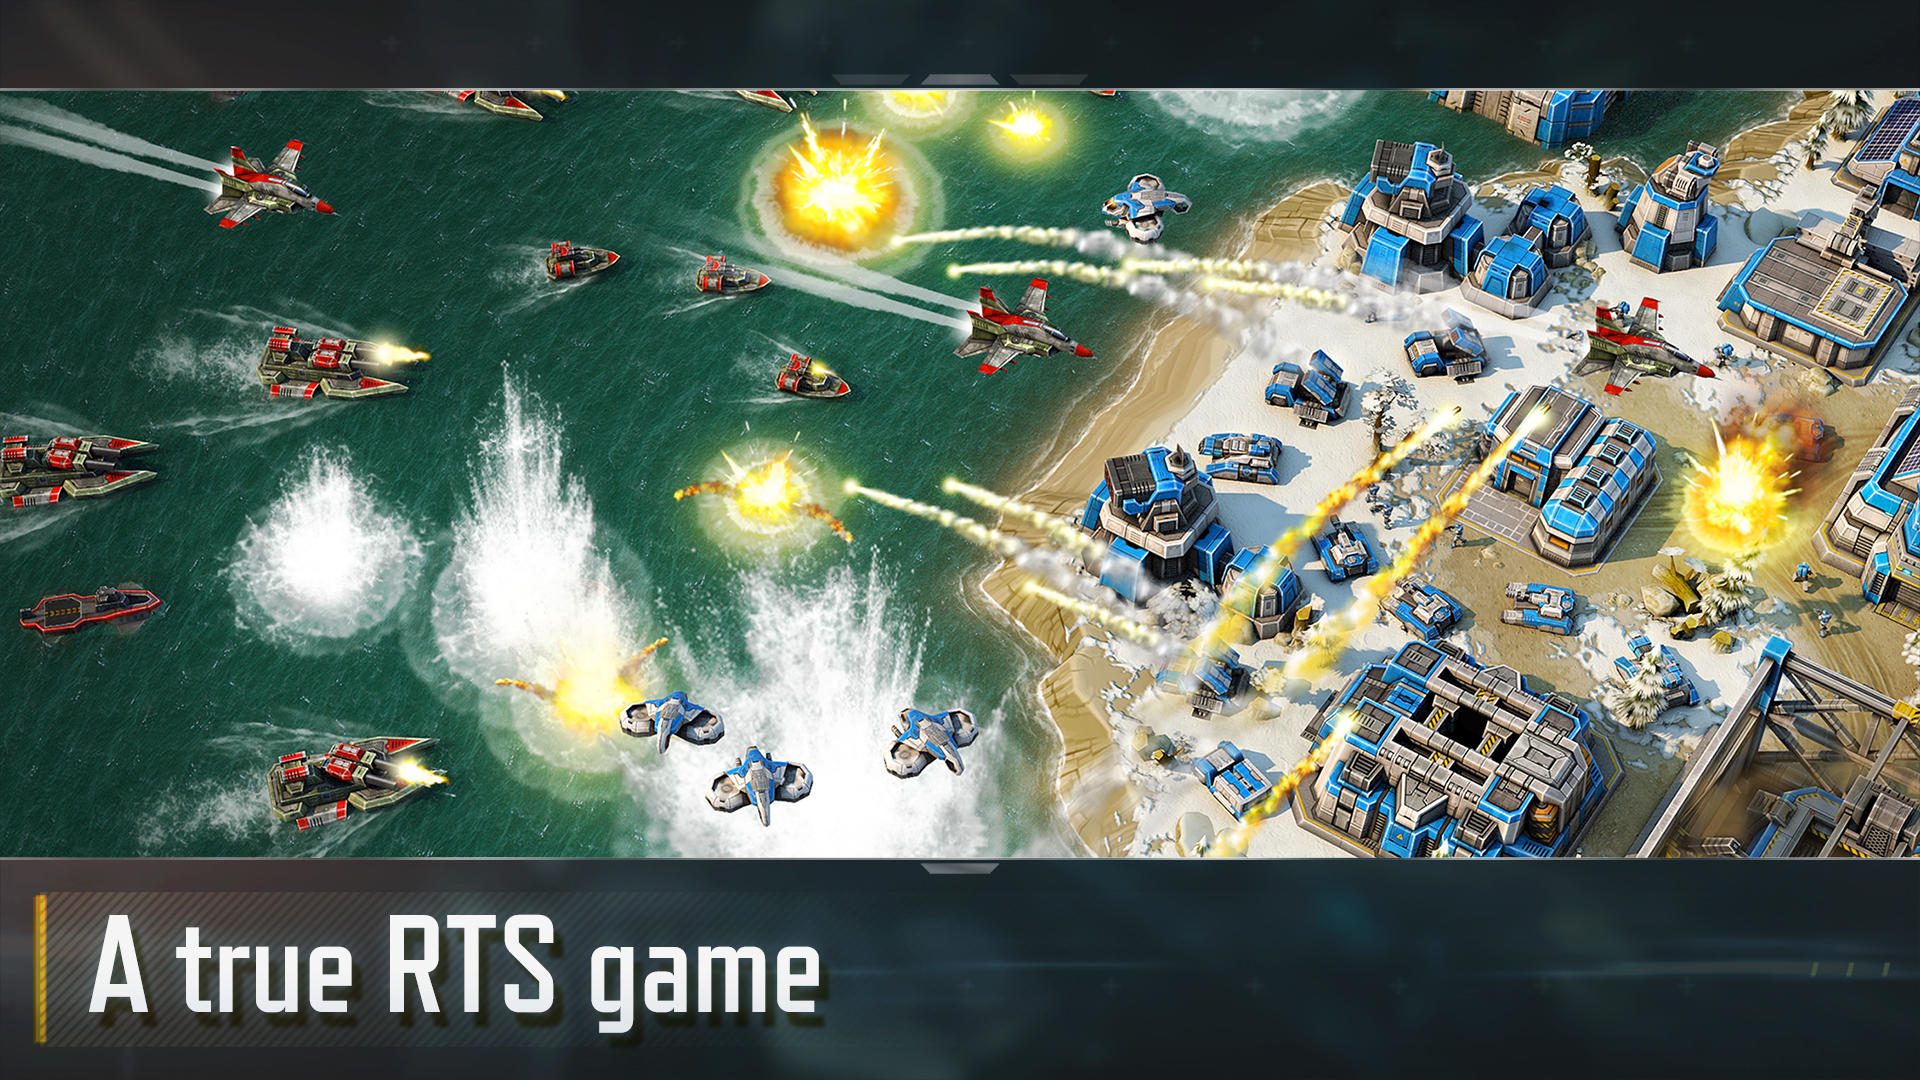 Screenshot 1 of Art of War 3:Trò chơi chiến lược RTS 4.4.10